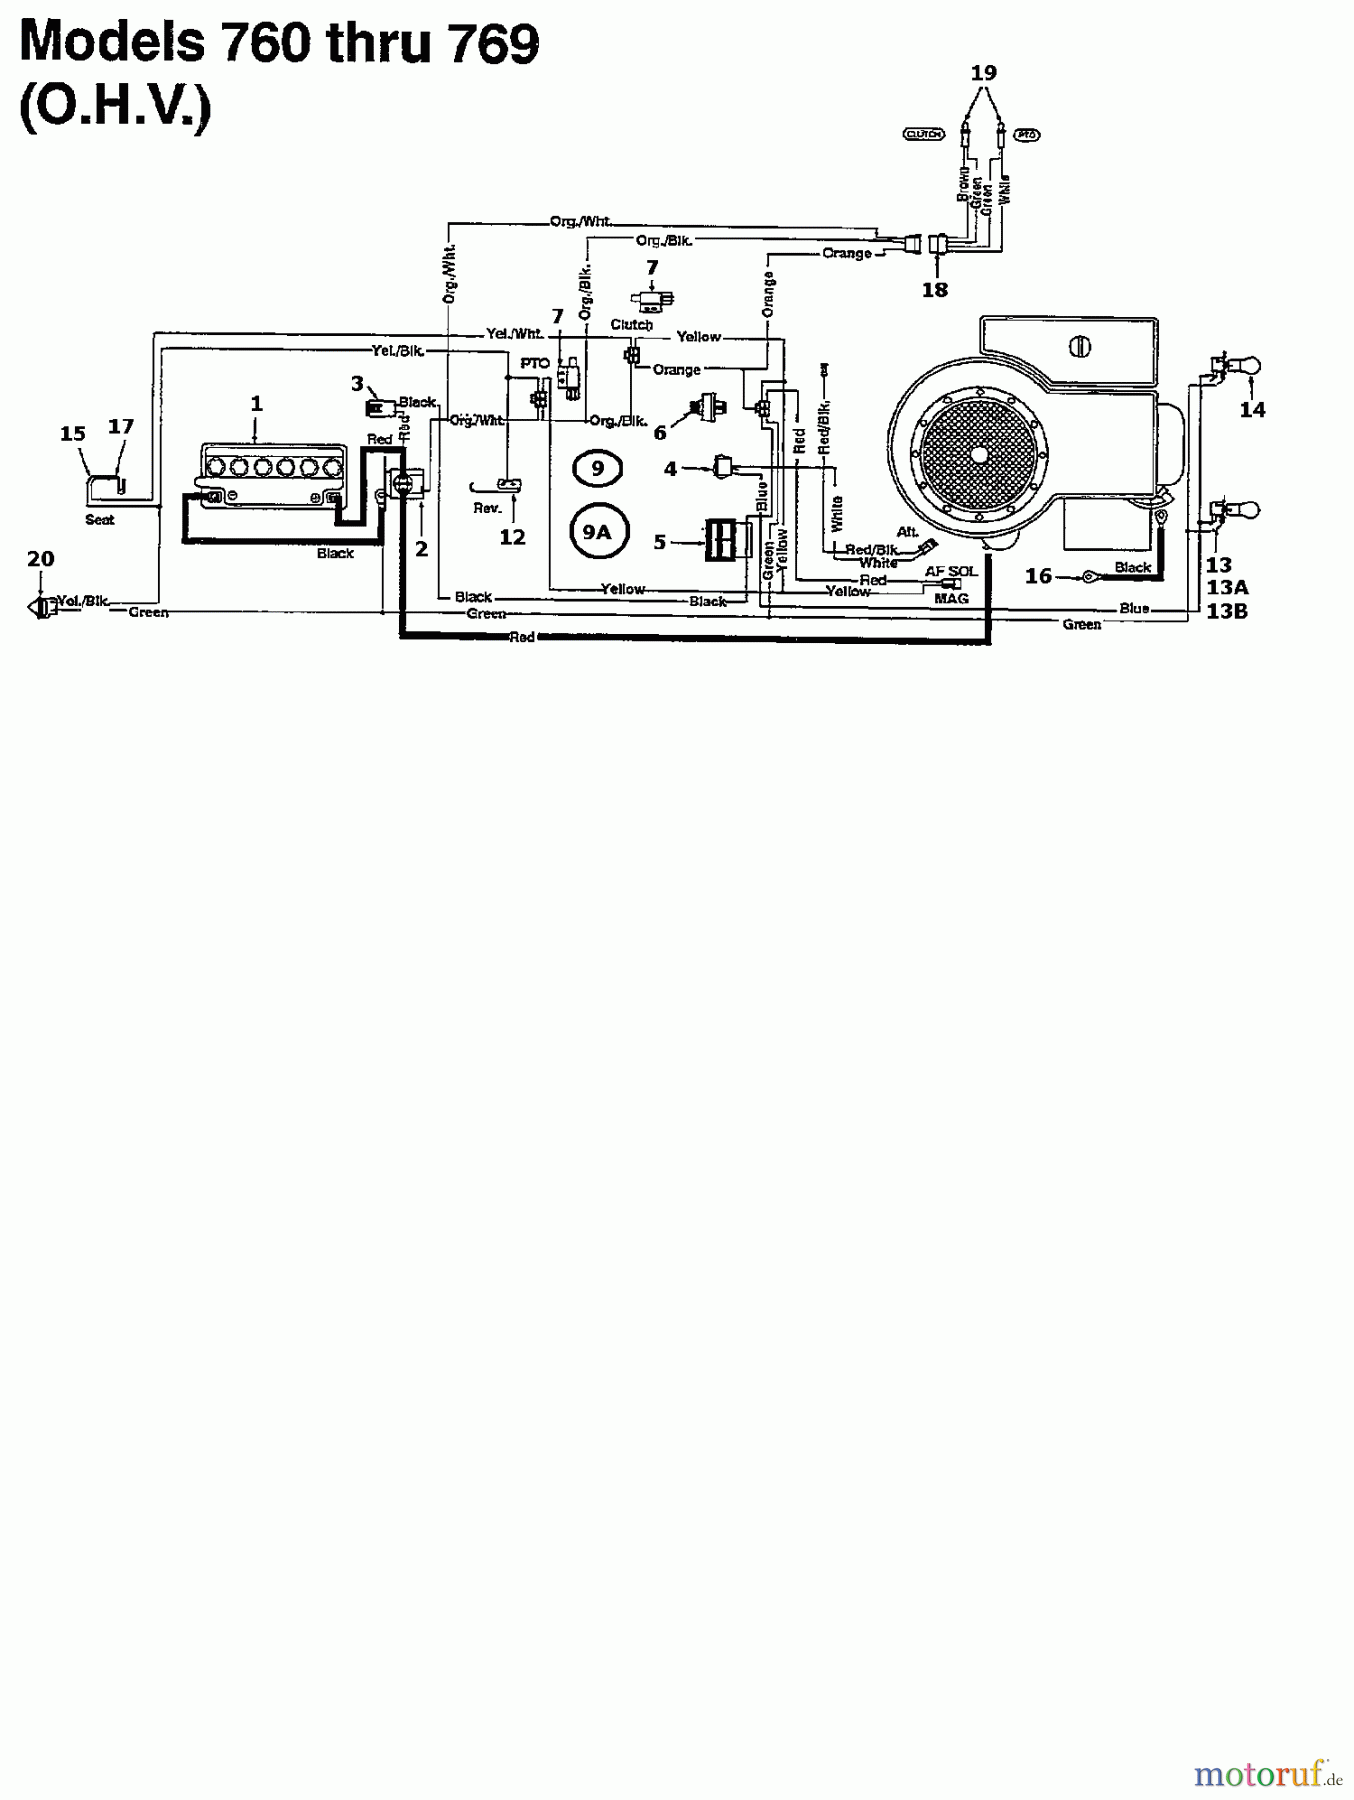  Columbia Rasentraktoren 160/102 135T761N626  (1995) Schaltplan für O.H.V.